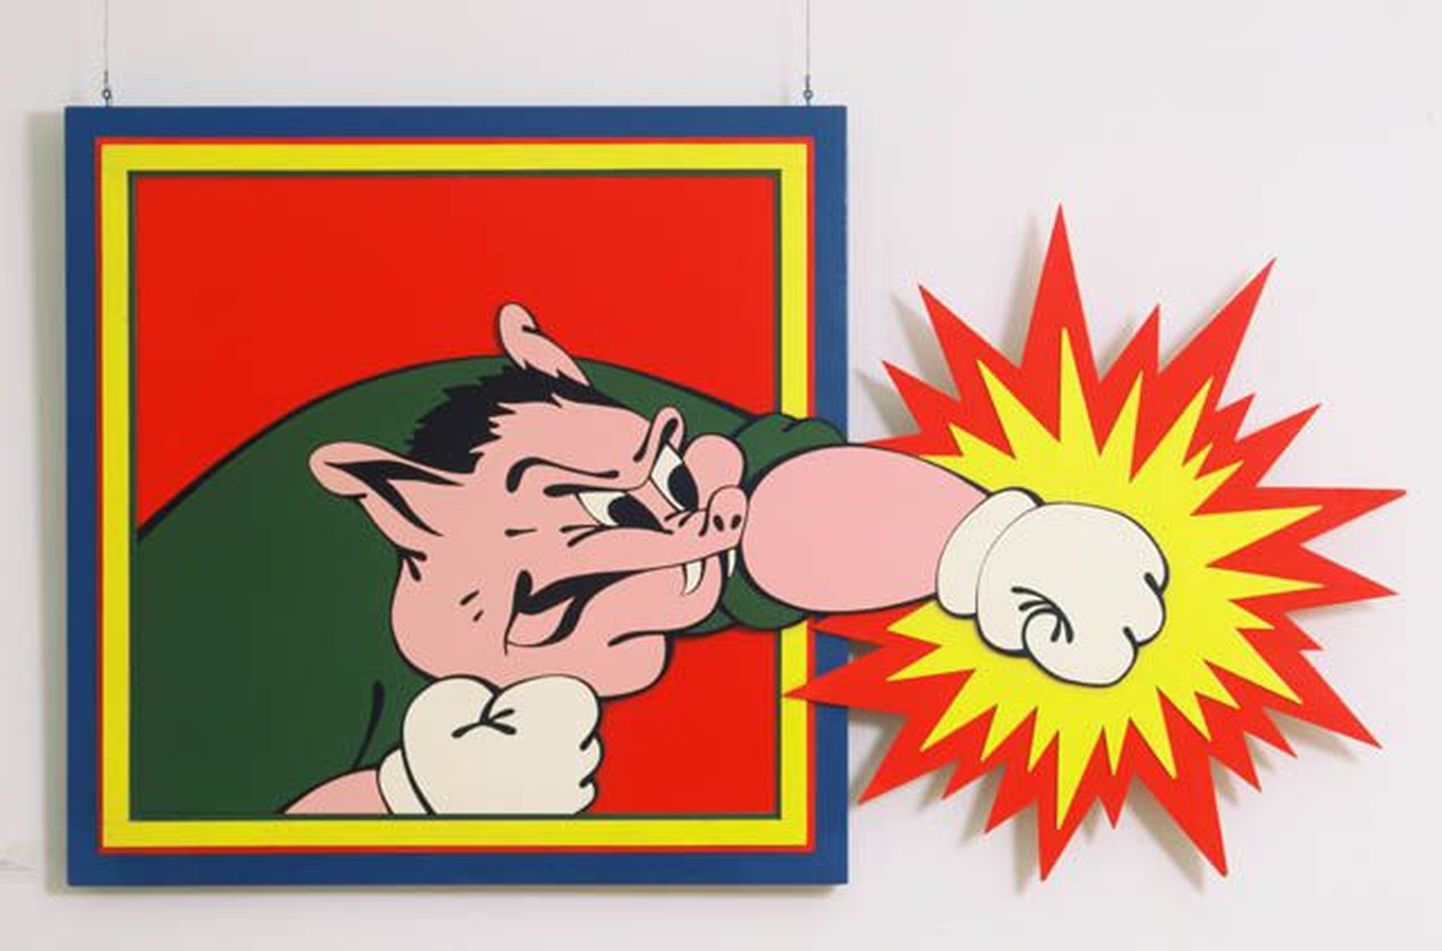 Harro Koskinen. The Pig Strikes. 1969.